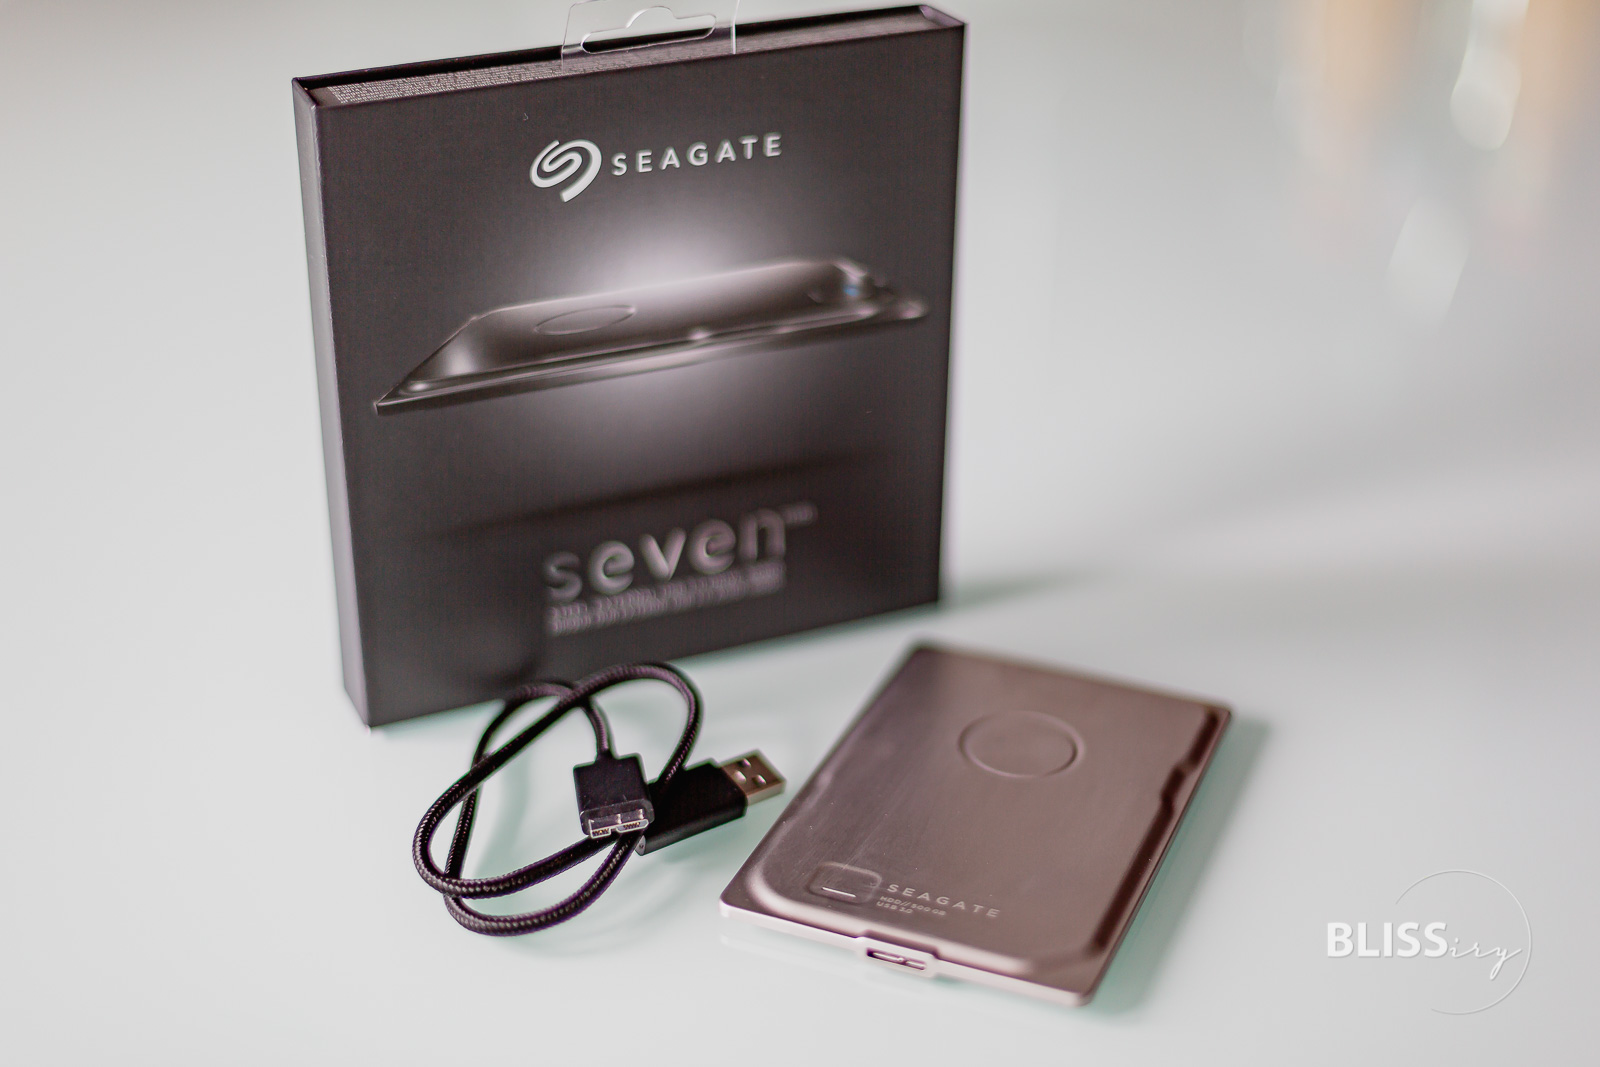 Seagate Seven Festplatte - extrem stabile externe Festplatte für den mobilen Einsatz am Laptop